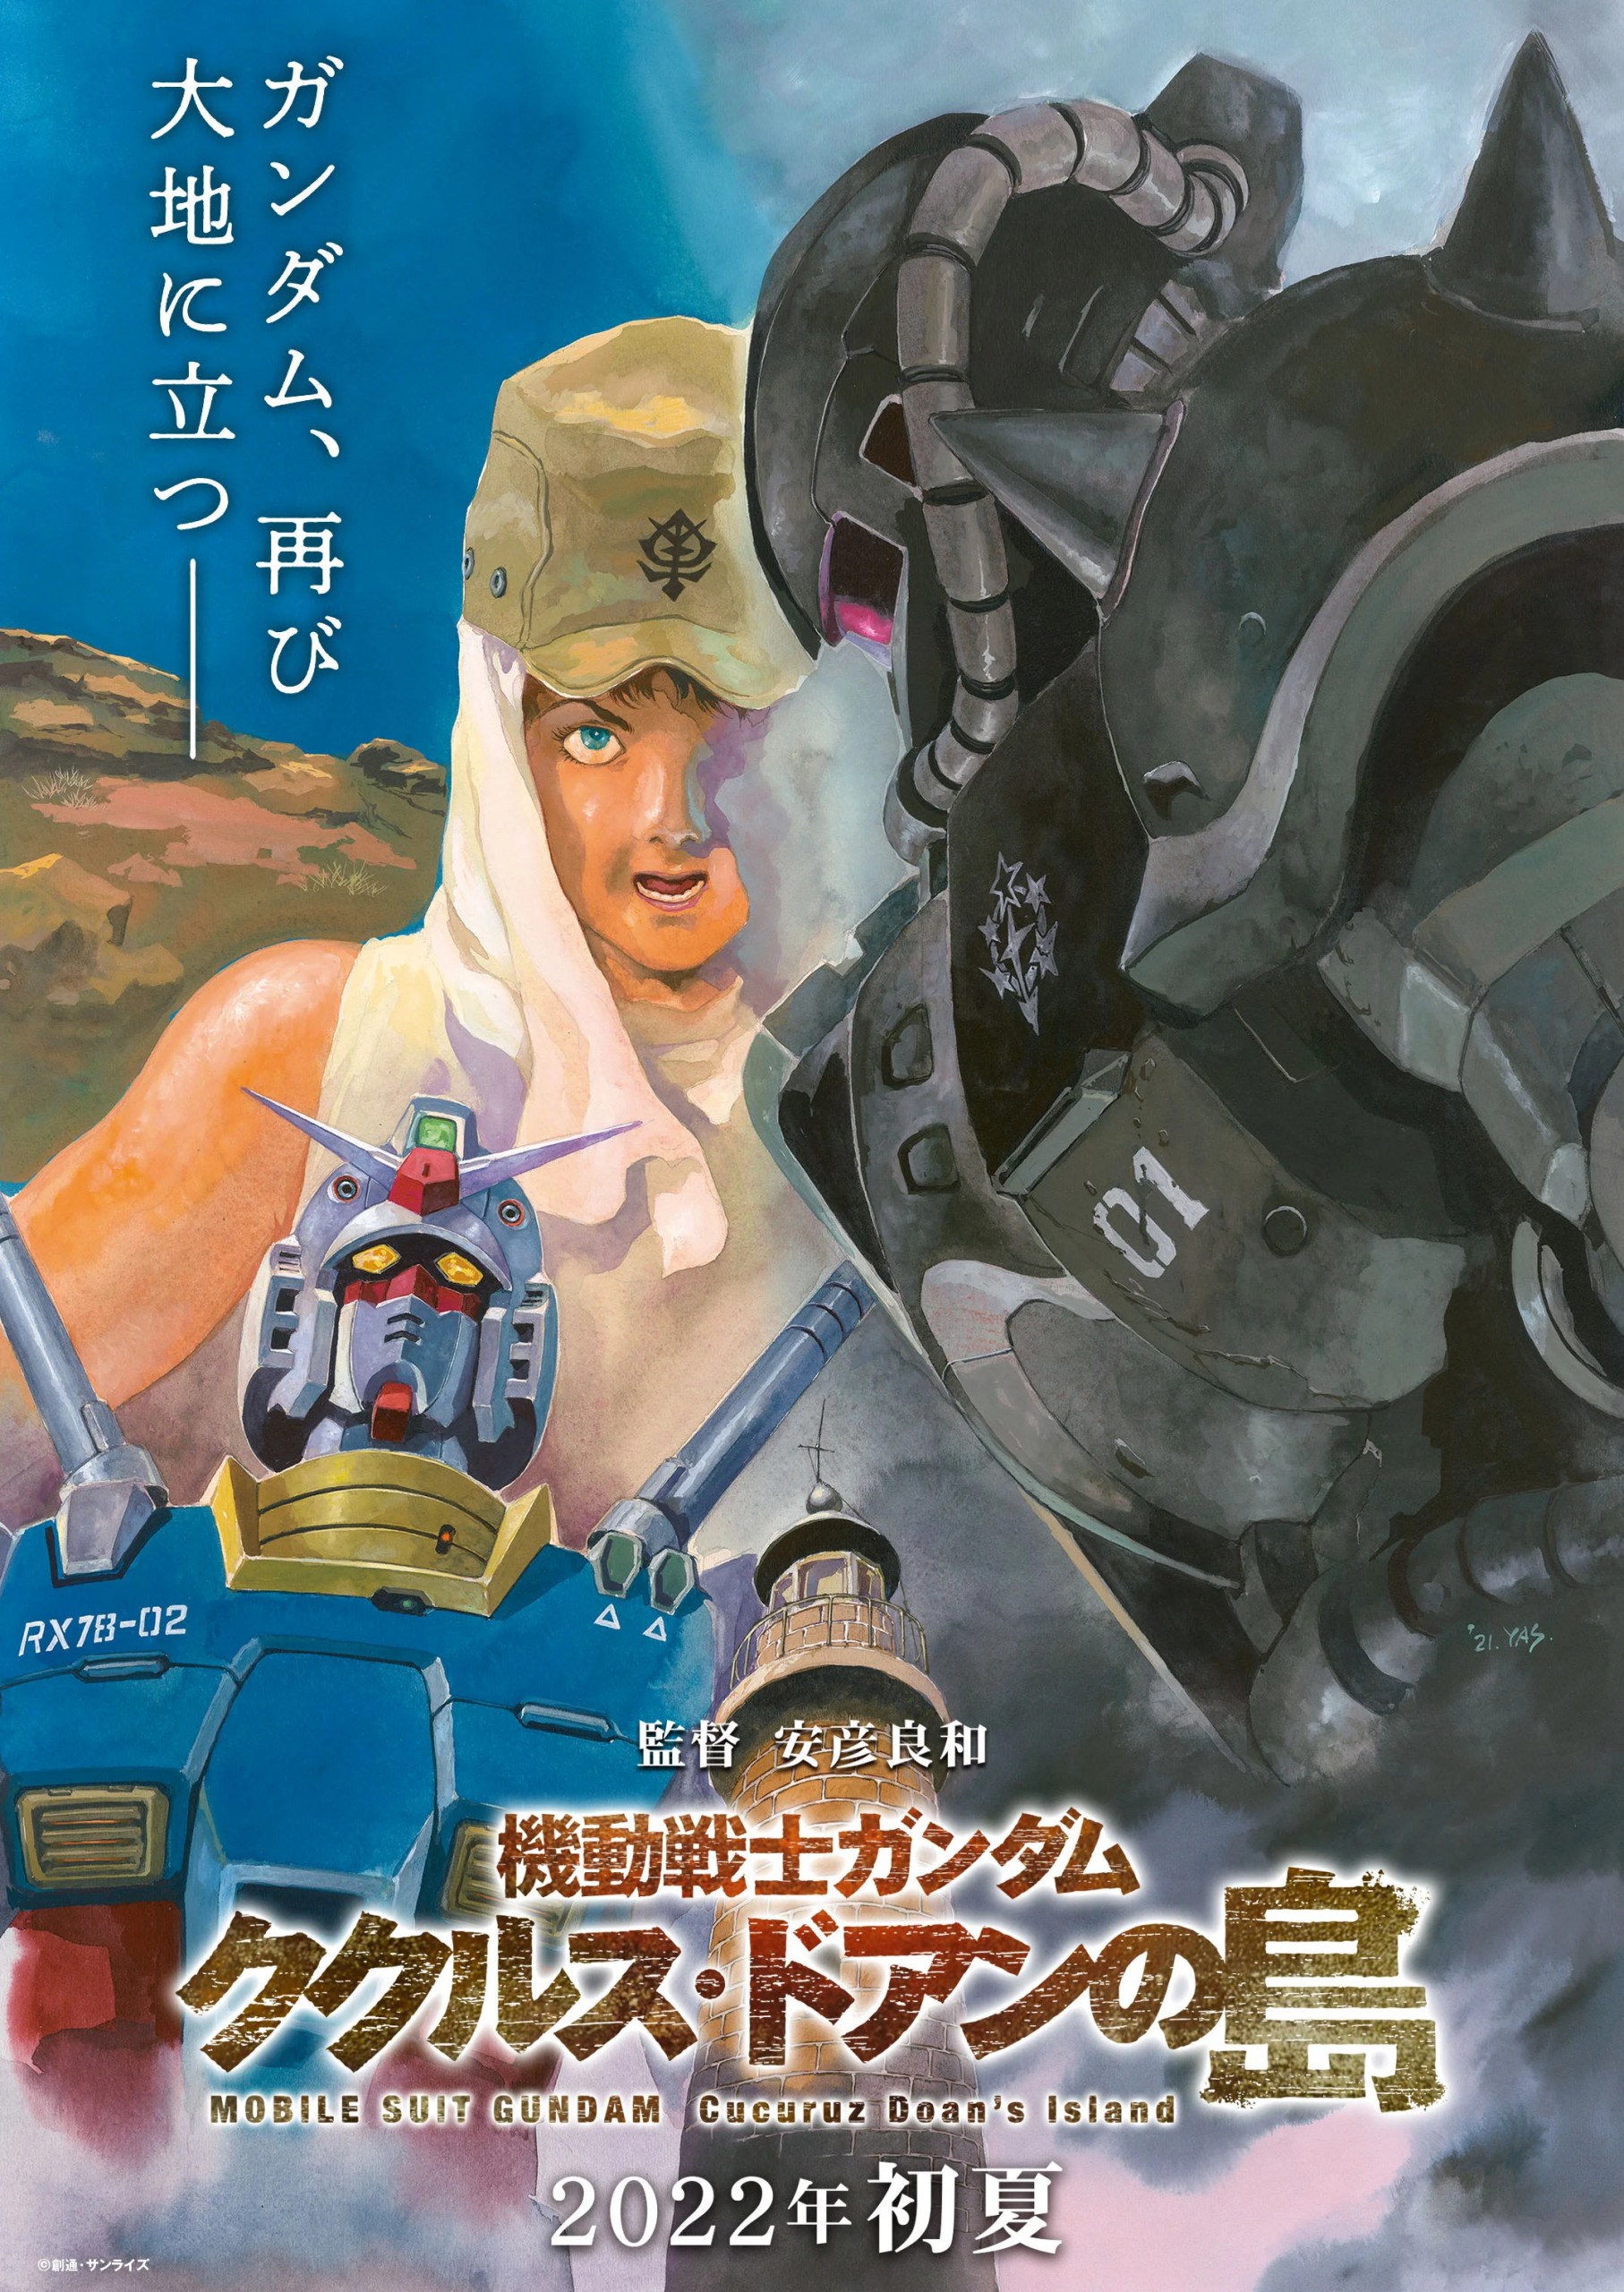 Gundam: Cucuruz Doan's Island anime film kommer til sommer 2022